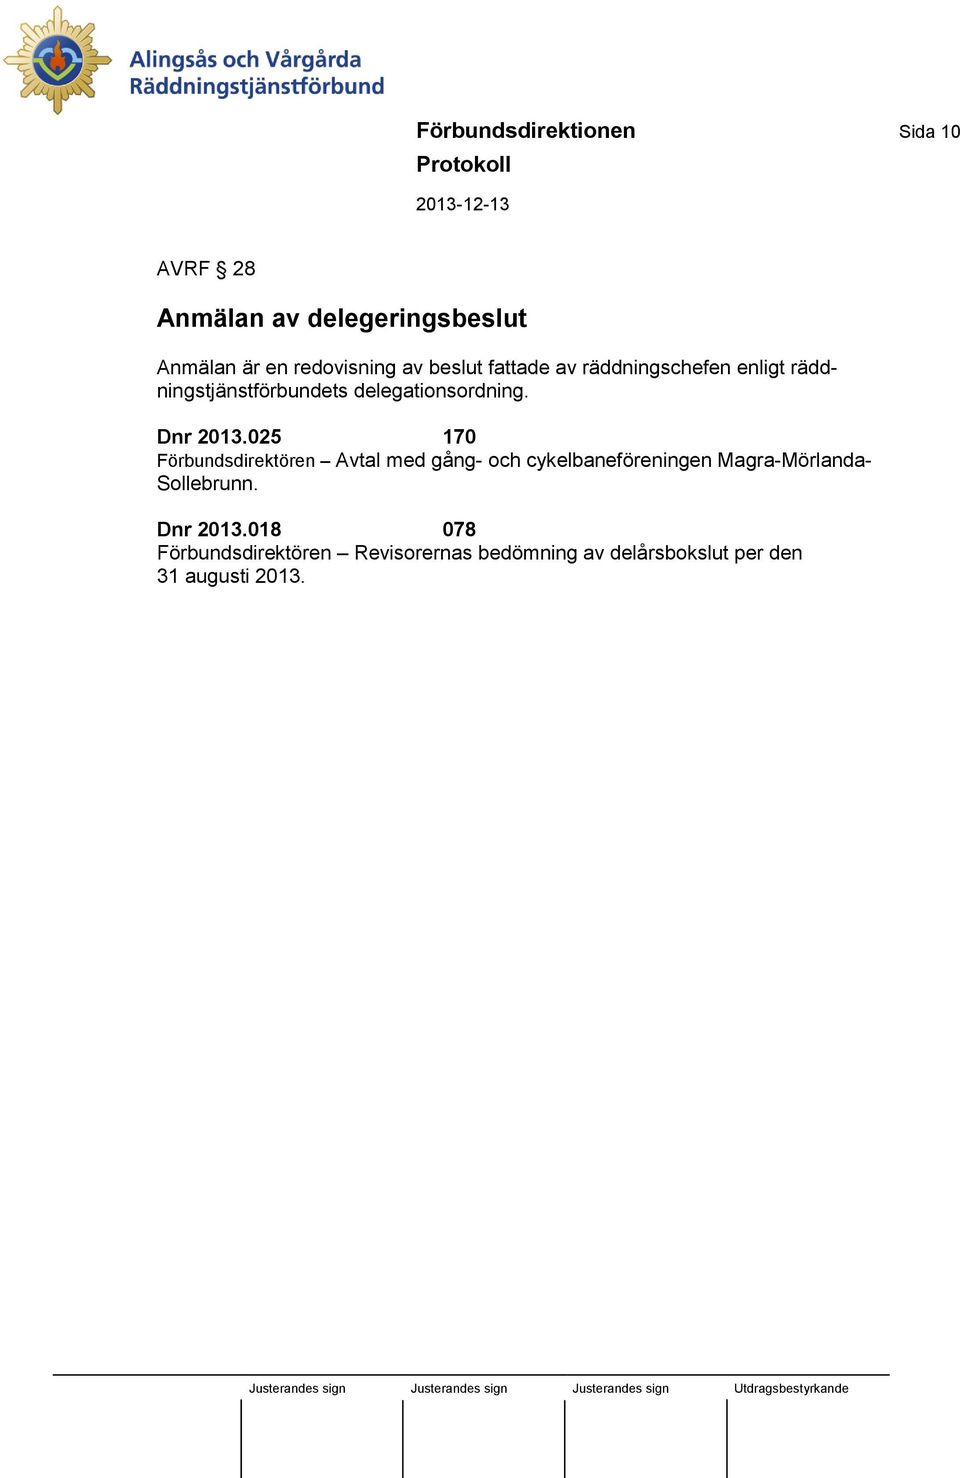 025 170 Förbundsdirektören Avtal med gång- och cykelbaneföreningen Magra-Mörlanda- Sollebrunn.